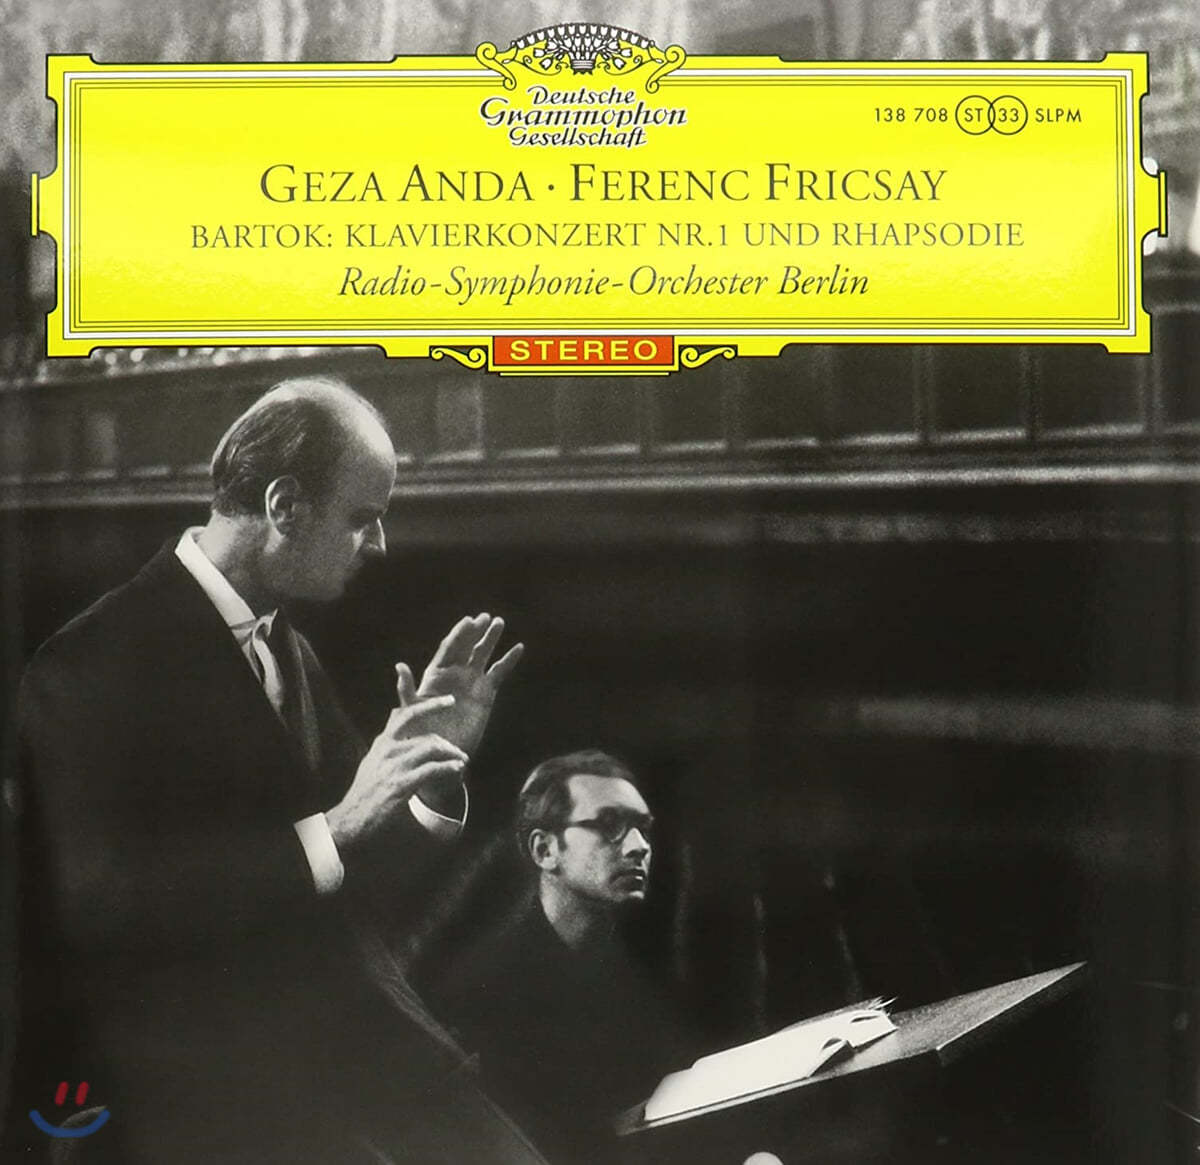 Geza Anda / Frenec Fricsay 바르톡: 피아노 협주곡 1번, 랩소디 (Bartok: Piano Concerto No.1, Rhapsody Op.1) [LP]